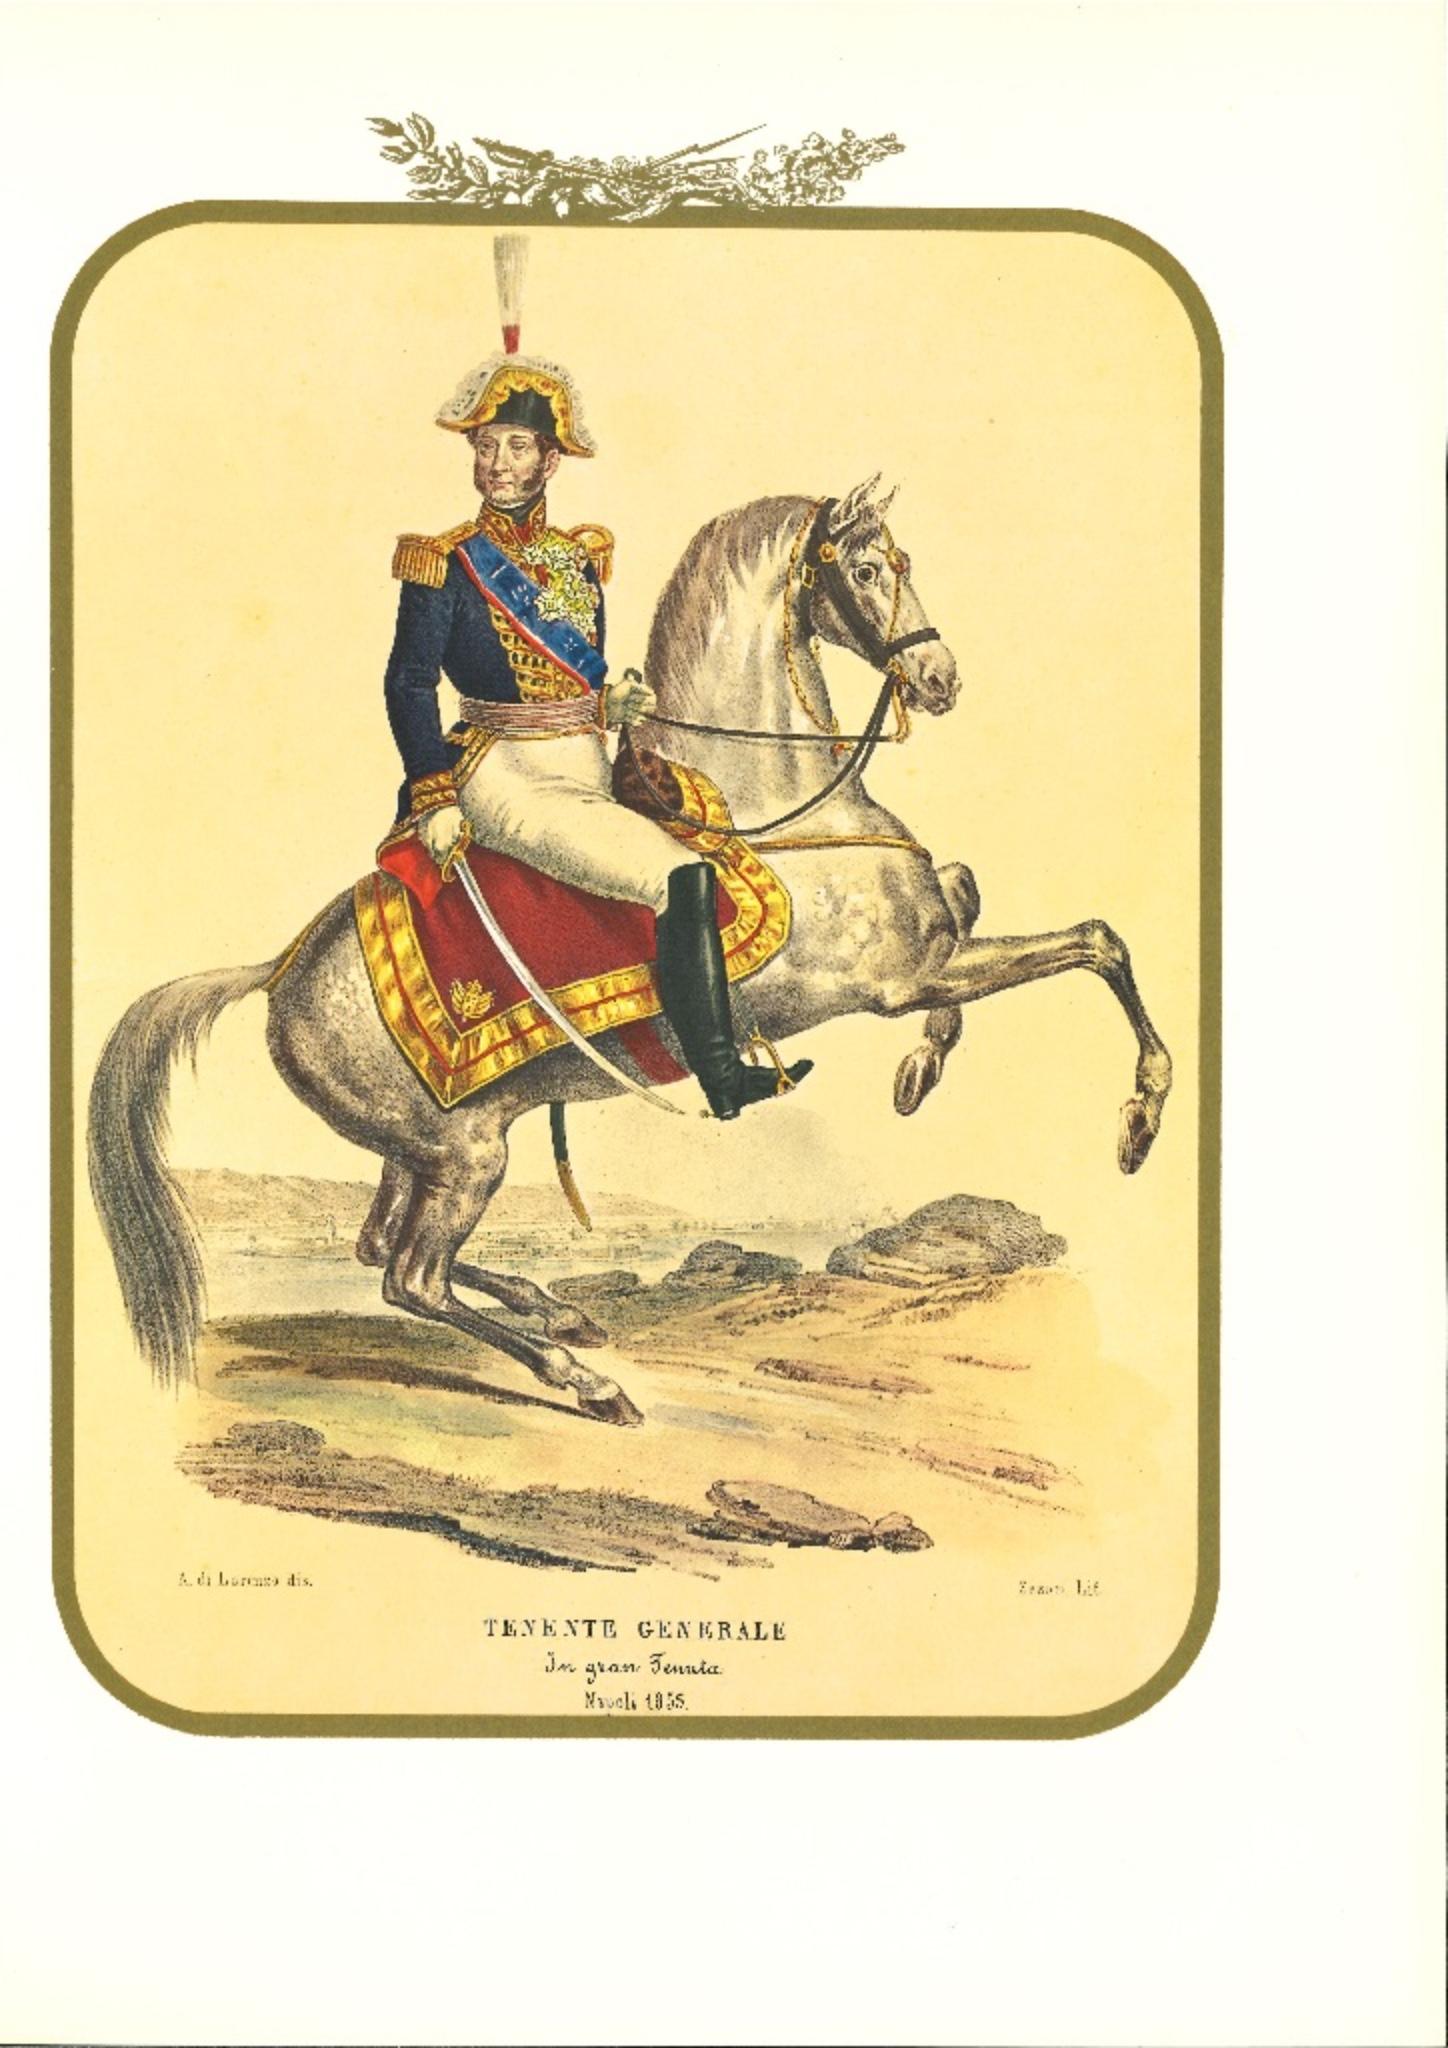 Lieutenant General - Original Lithograph by Antonio Zezon - 1855